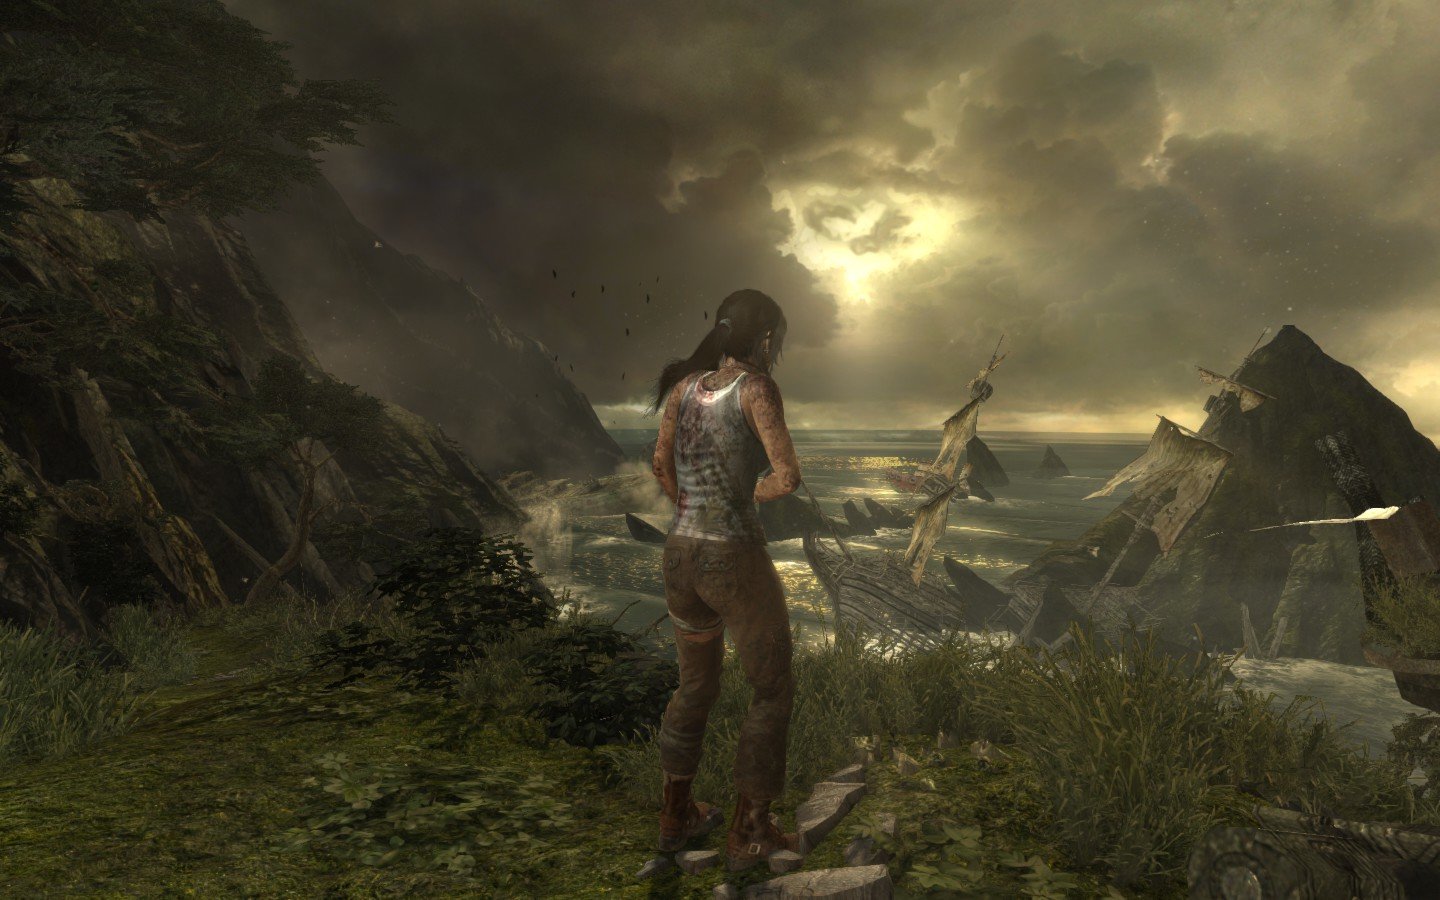 Best Tomb Raider (Lara Croft) wallpaper ID:437234 for High Resolution hd 1440x900 PC